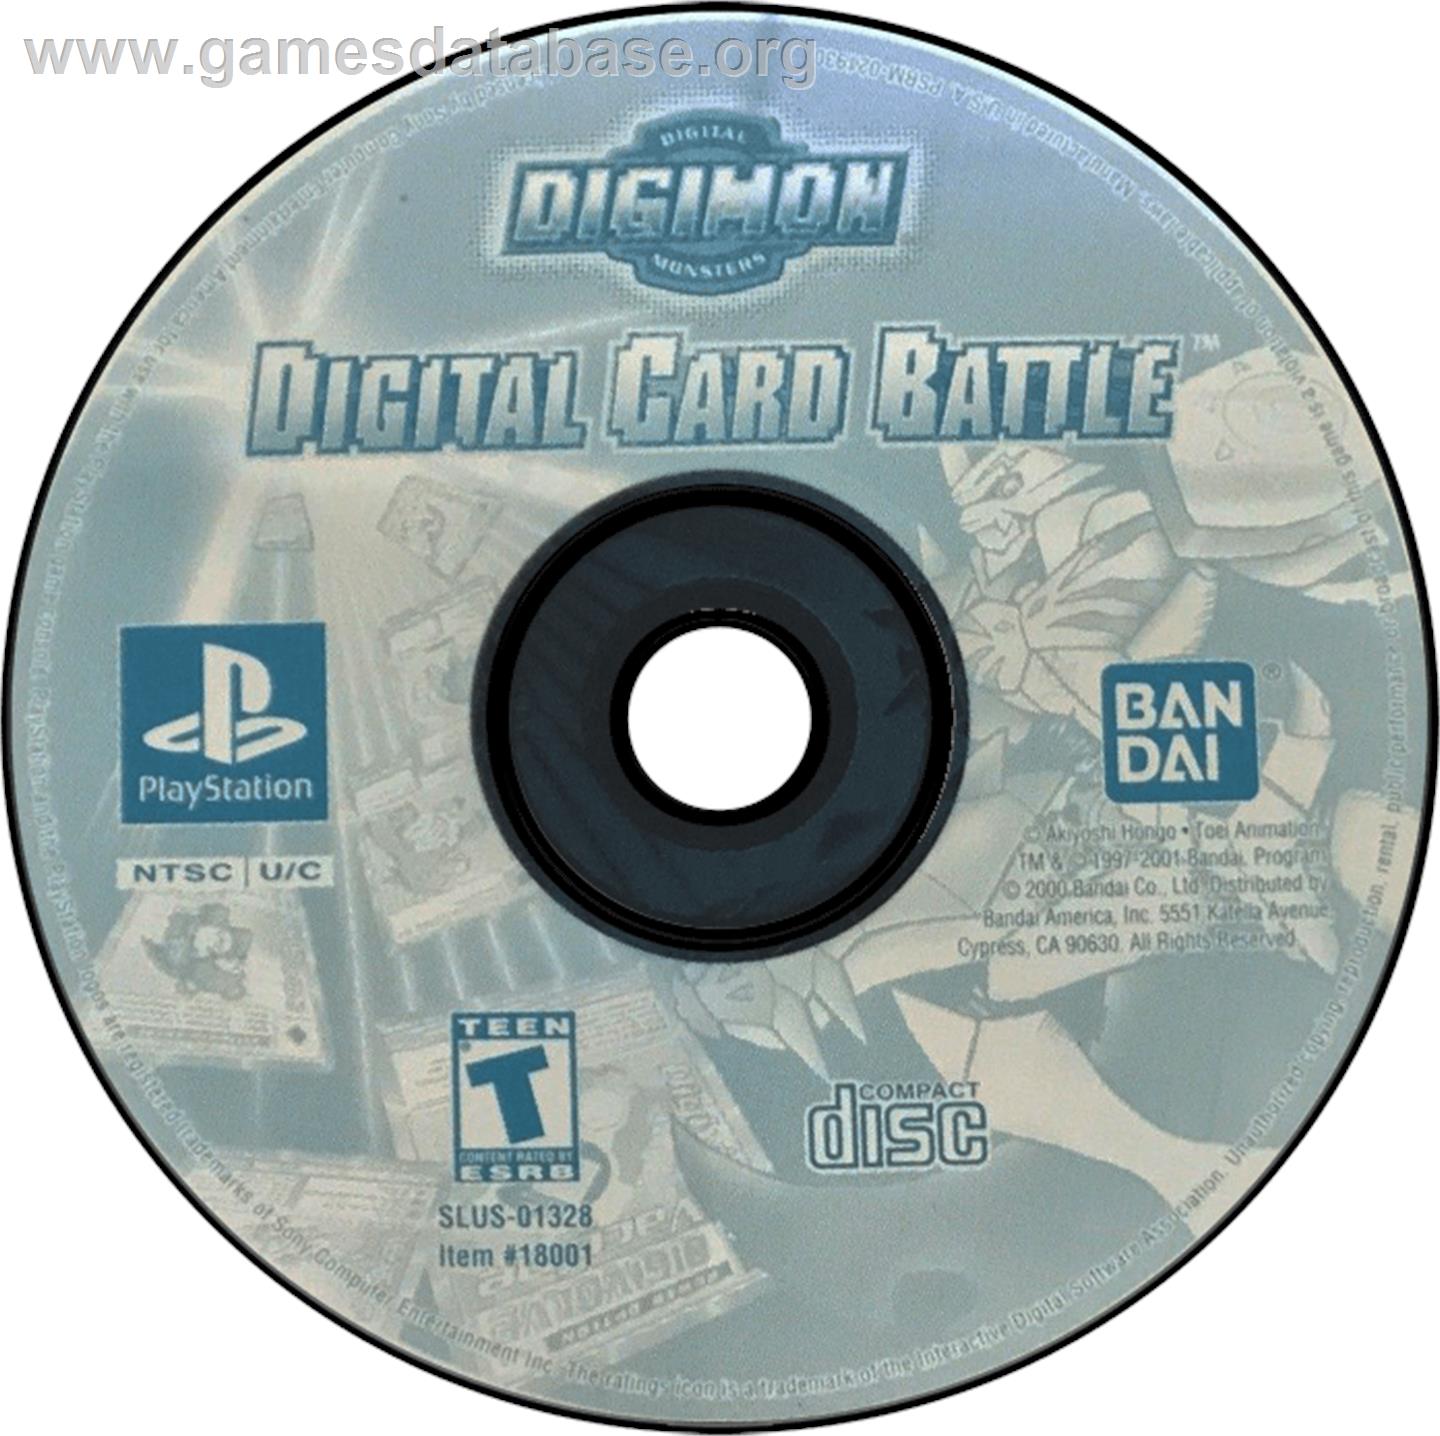 Digimon Digital Card Battle - Sony Playstation - Artwork - Disc